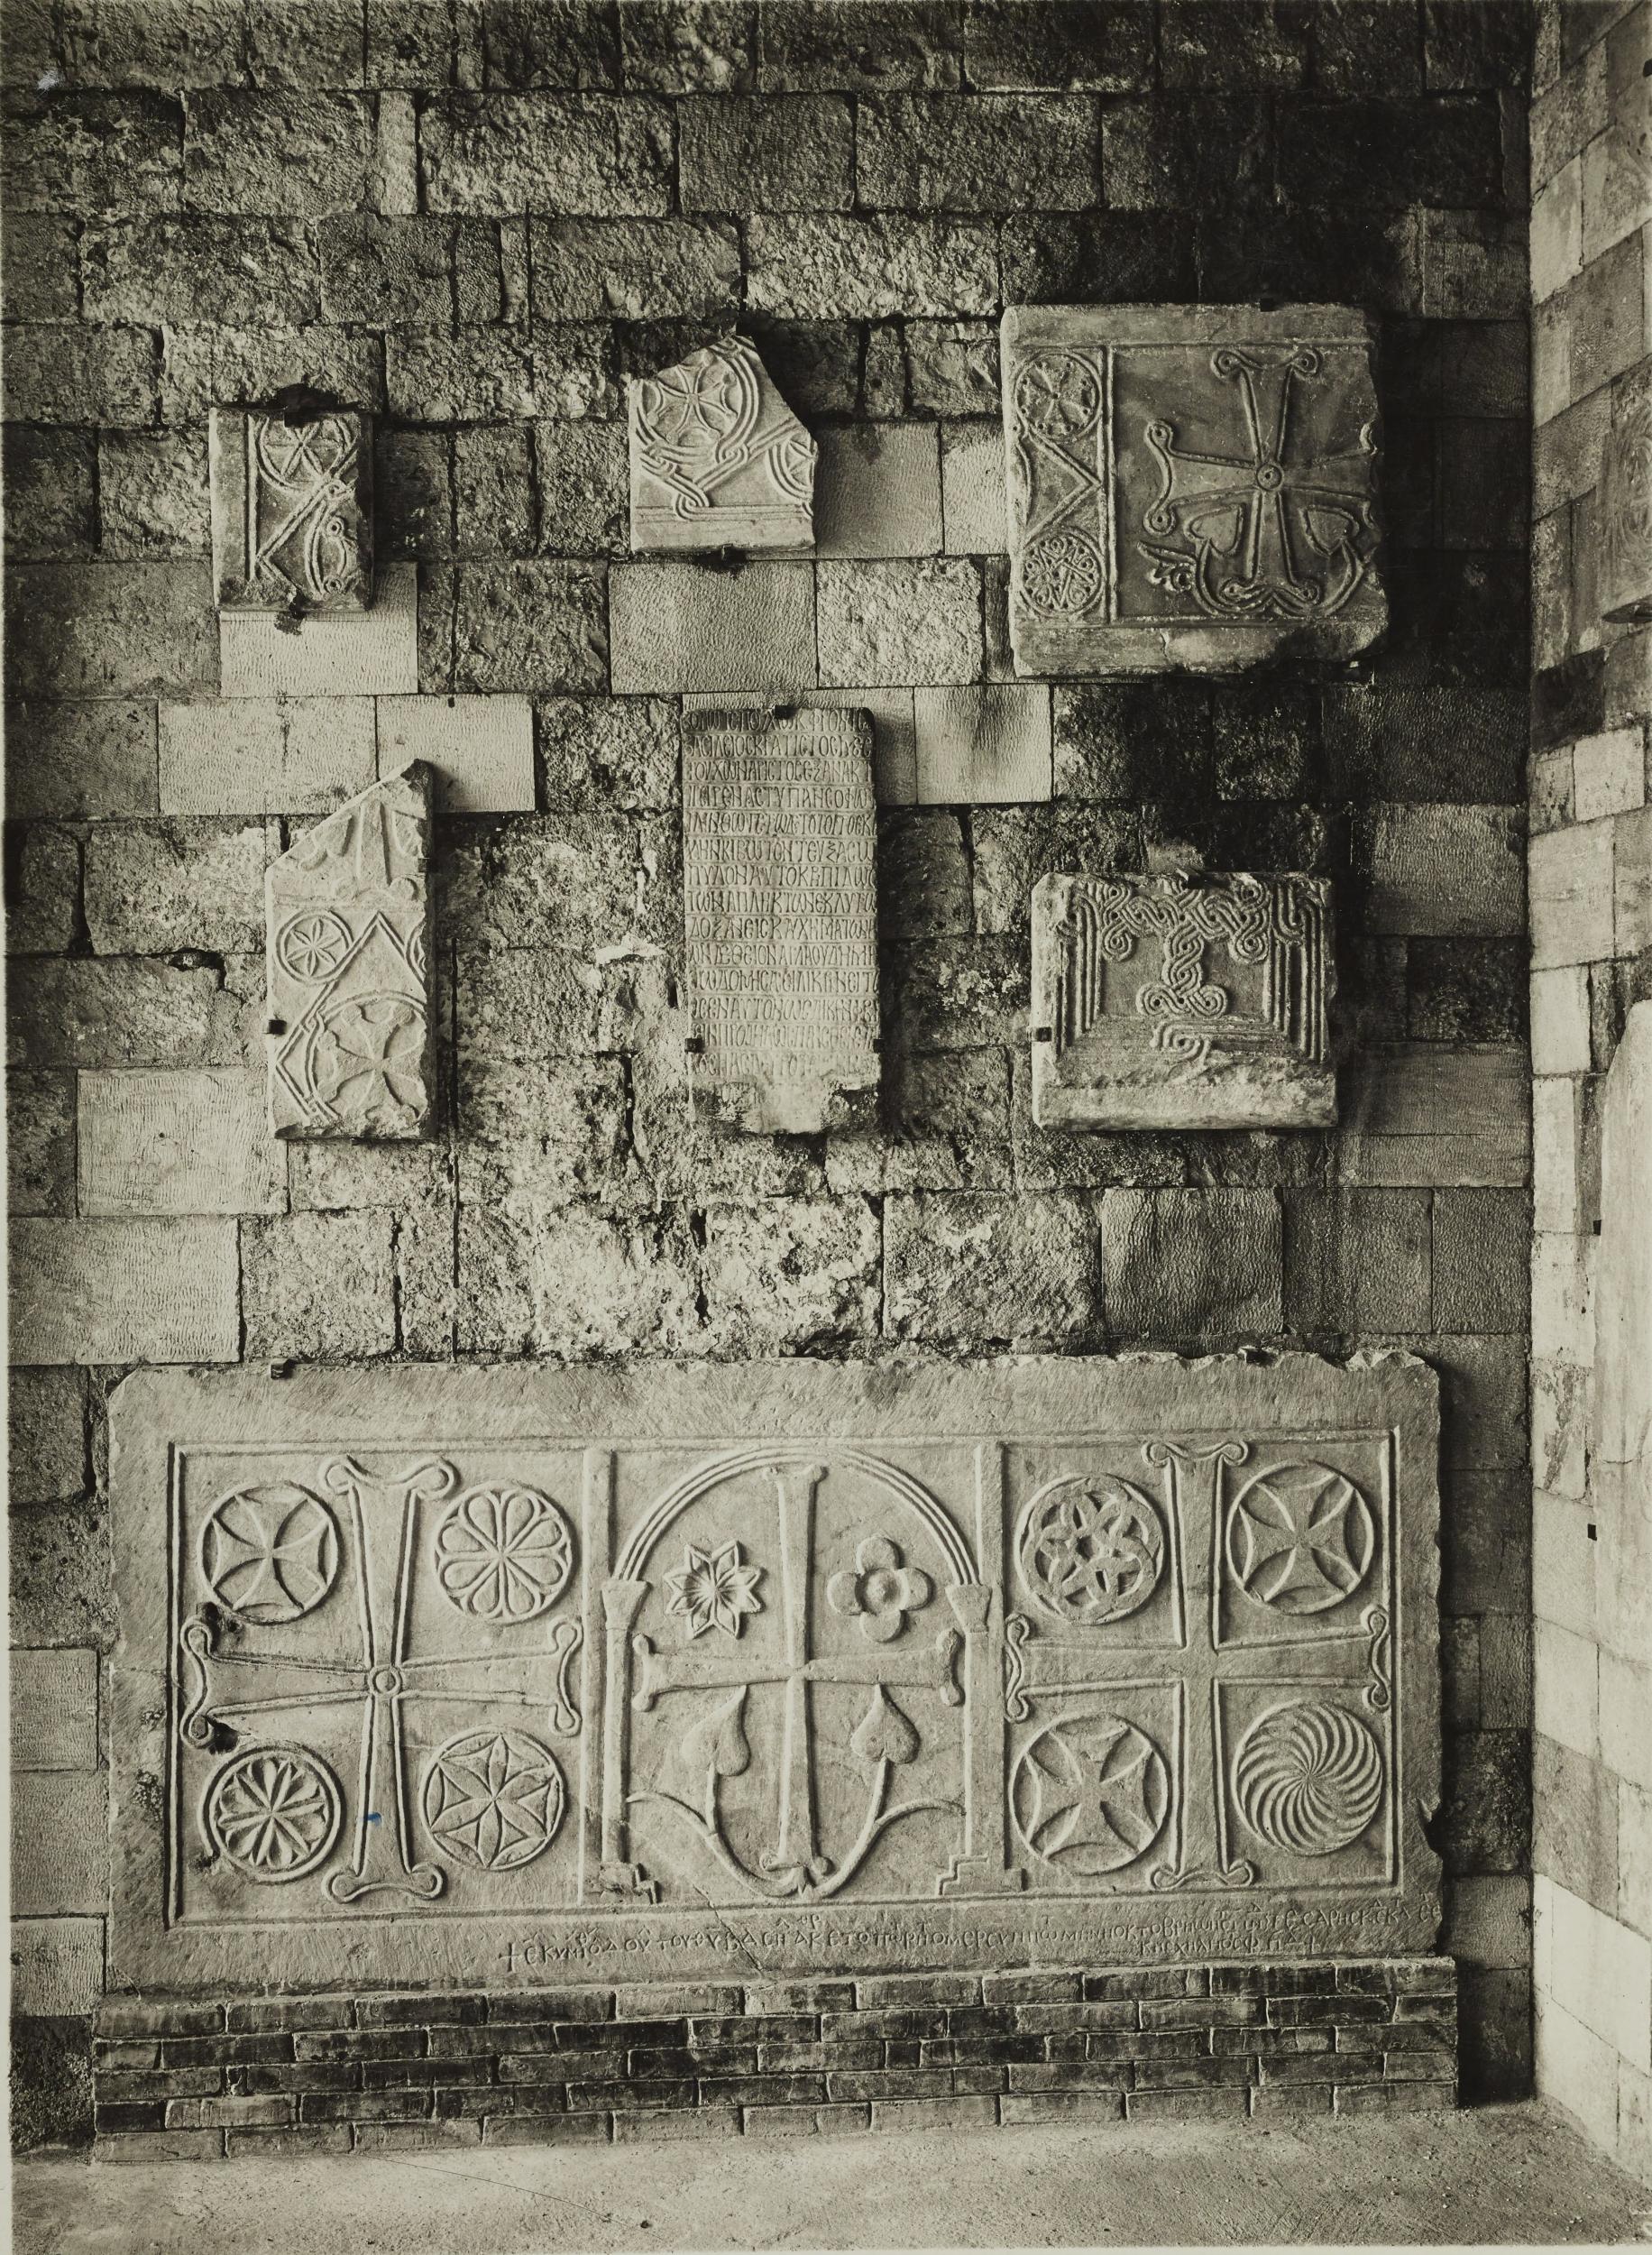 Fotografo non identificato, Bari - Basilica S. Nicola, portico dei pellegrini, frammenti plutei, 1926-1950, gelatina ai sali d'argento/carta, MPI136874